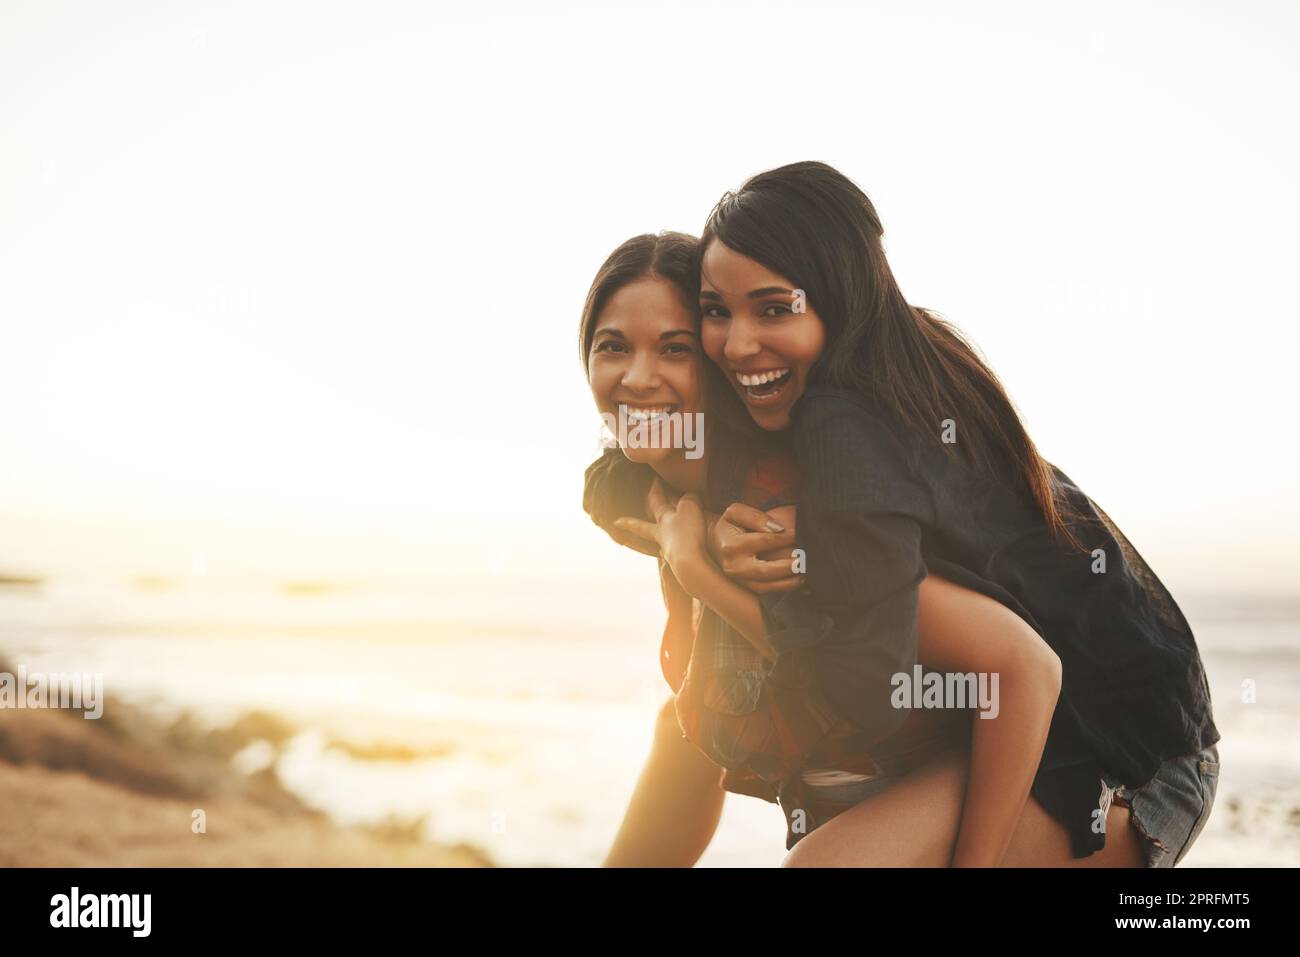 Le giornate estive sono state fatte per giocare: Due giovani donne hanno fatto un giro in spiaggia. Foto Stock